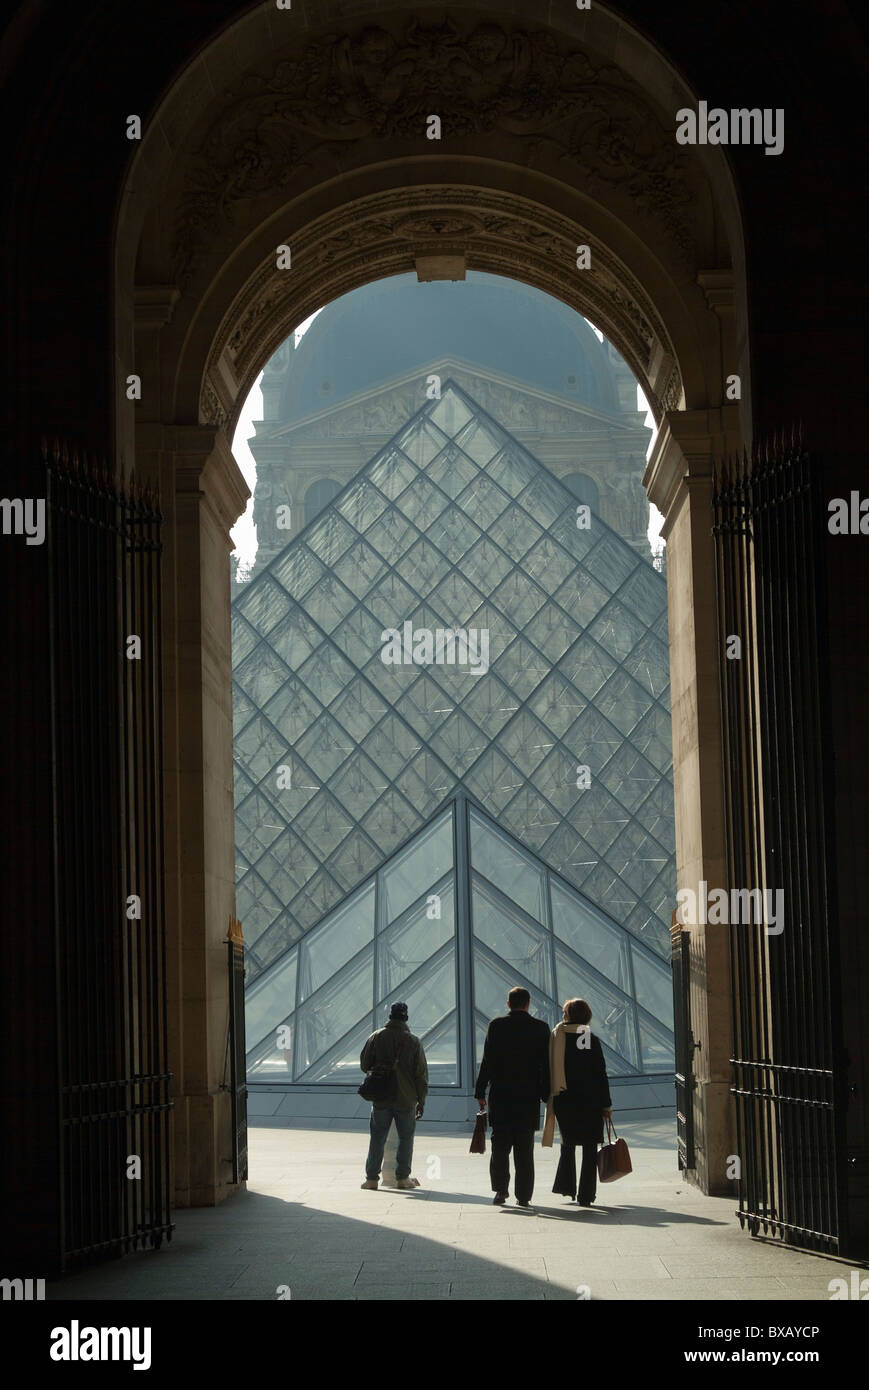 La Piramide del Louvre, visto da un grande arco, Paris, Francia. Foto Stock